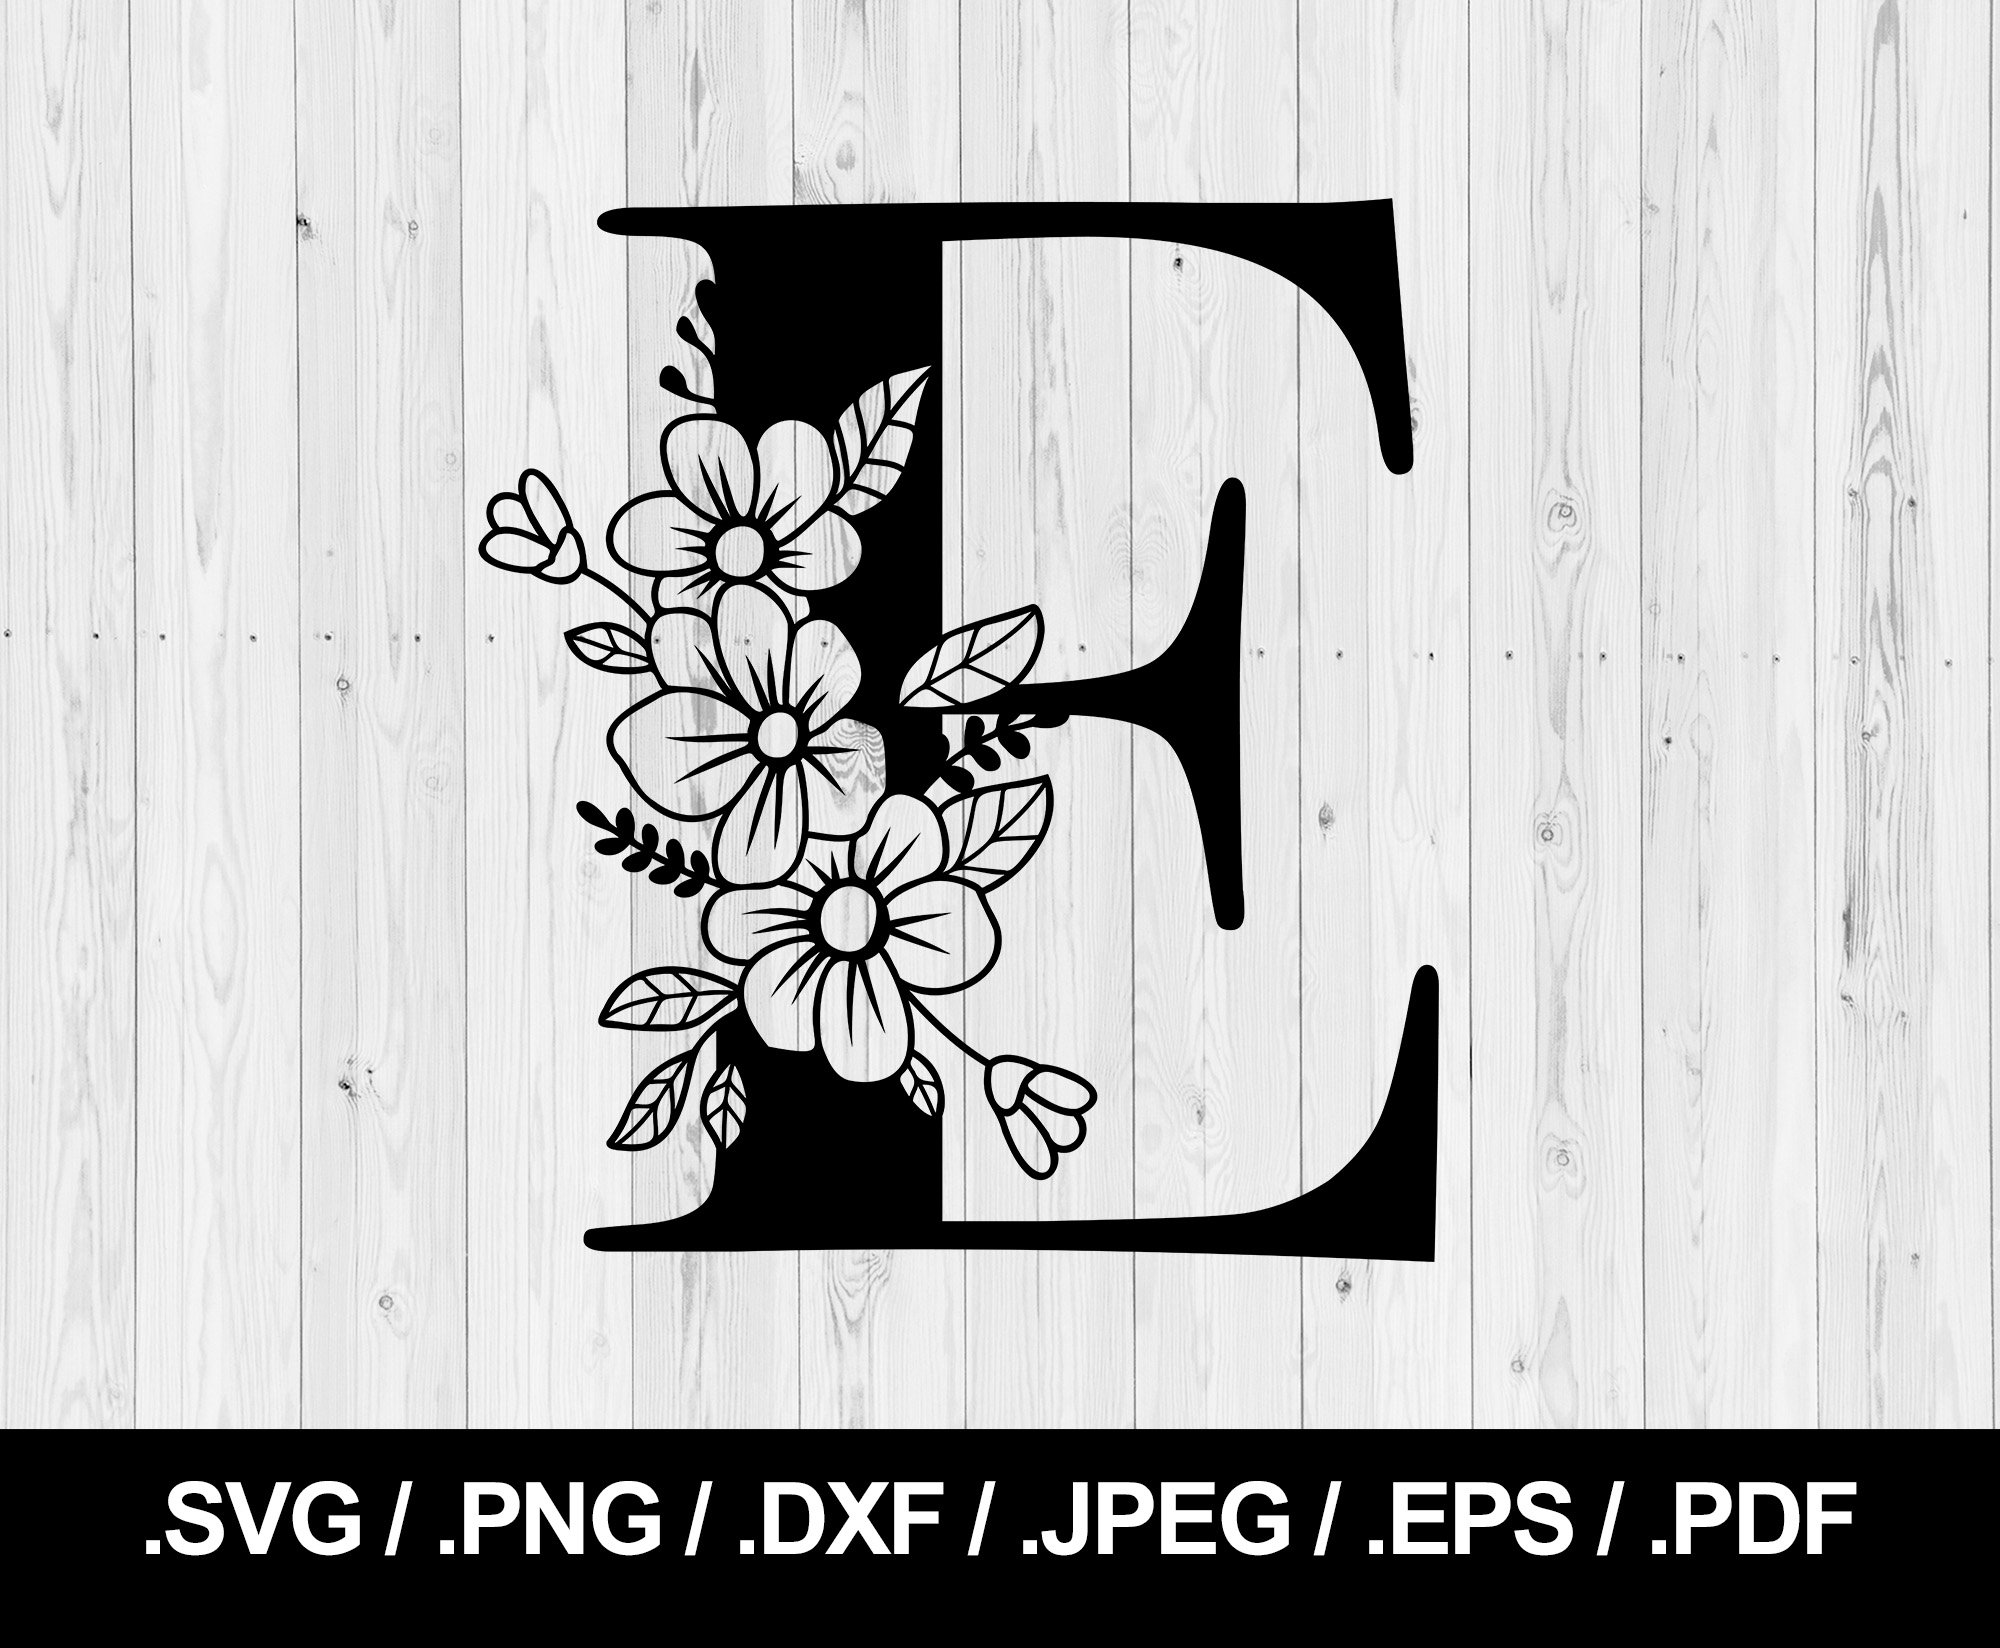 Free Y Letter Design - Download in PDF, Illustrator, PSD, EPS, SVG, PNG,  JPEG